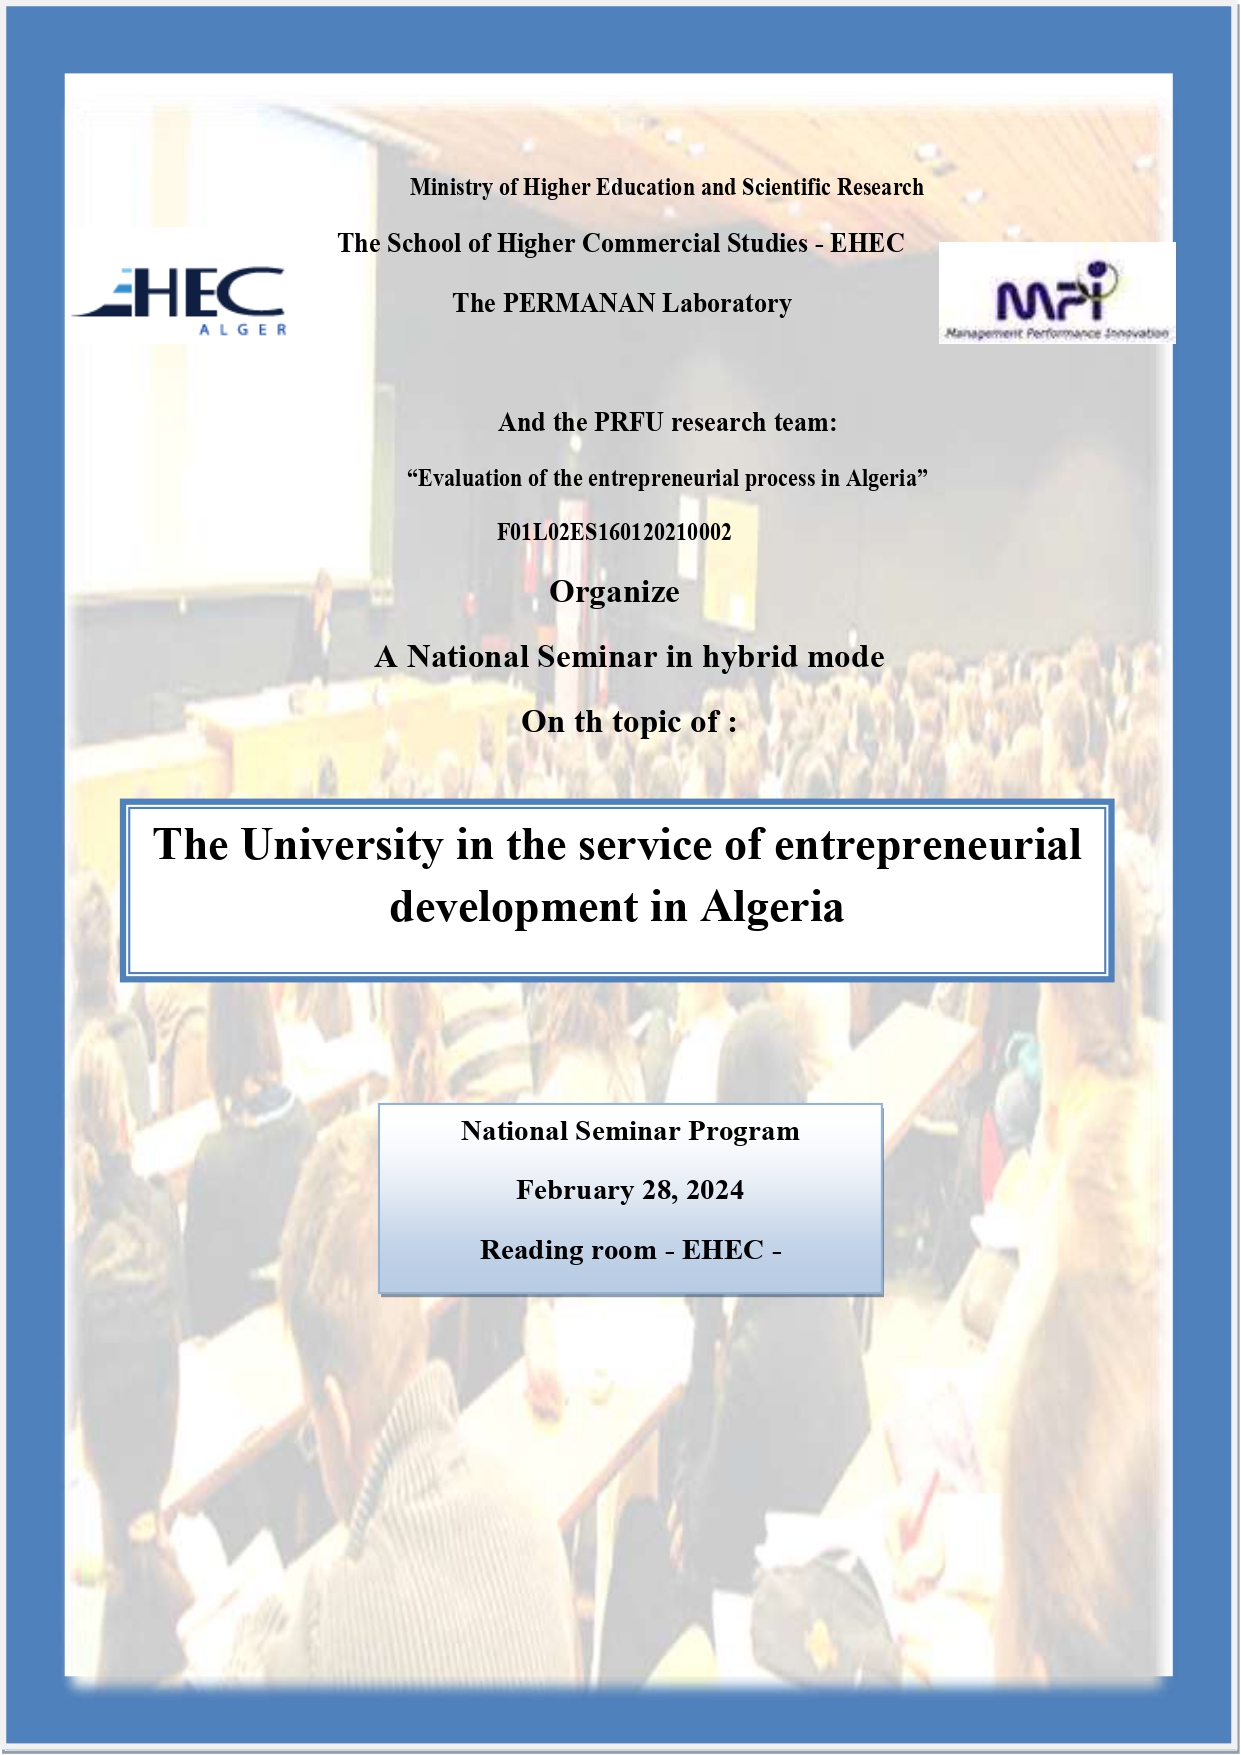 Le Laboratoire PERMANAN et l’équipe de recherche PRFU “Evaluation du processus entrepreneurial en Algérie” organisent un séminaire national hybride